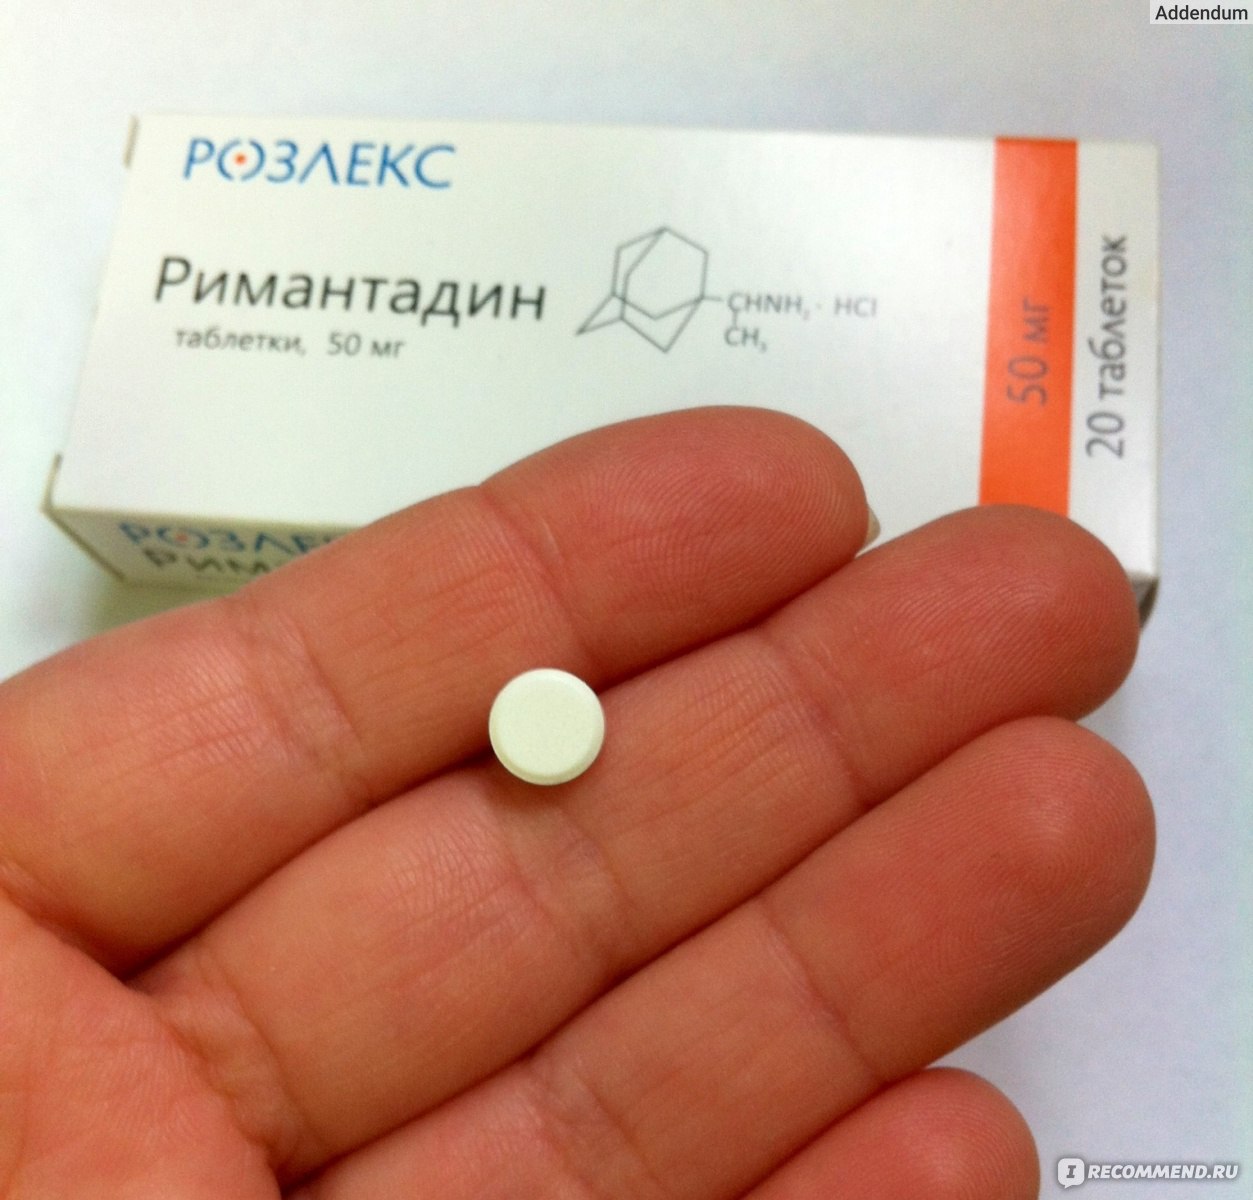 Противовирусные таблетки ремантадин